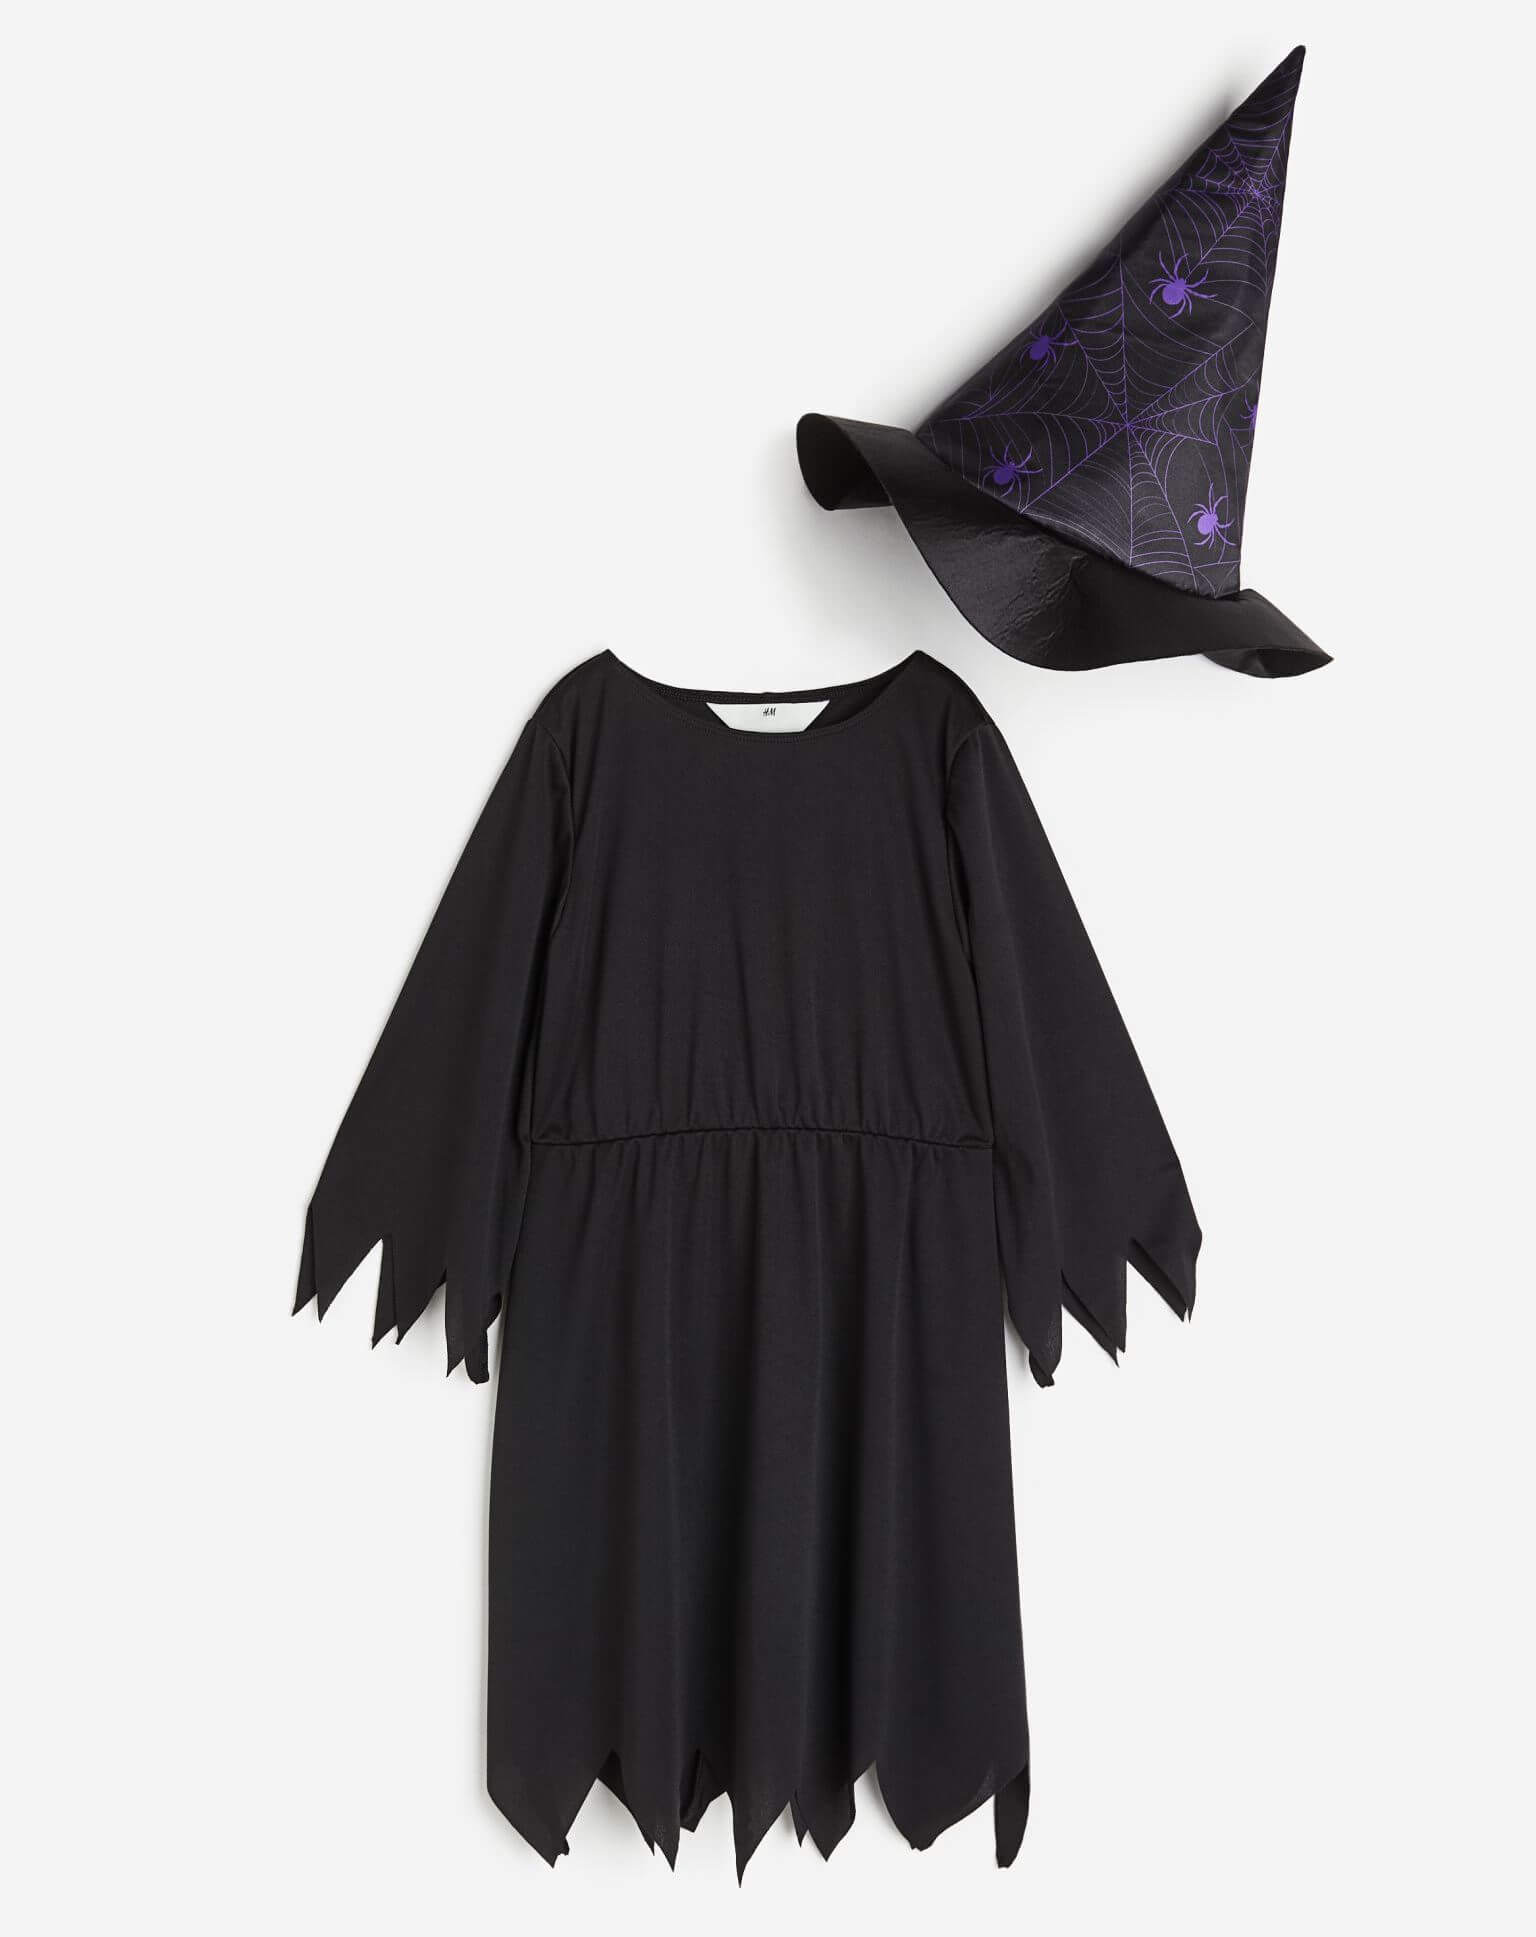 Карнавальный костюм H&M Spiders Witch, черный/фиолетовый